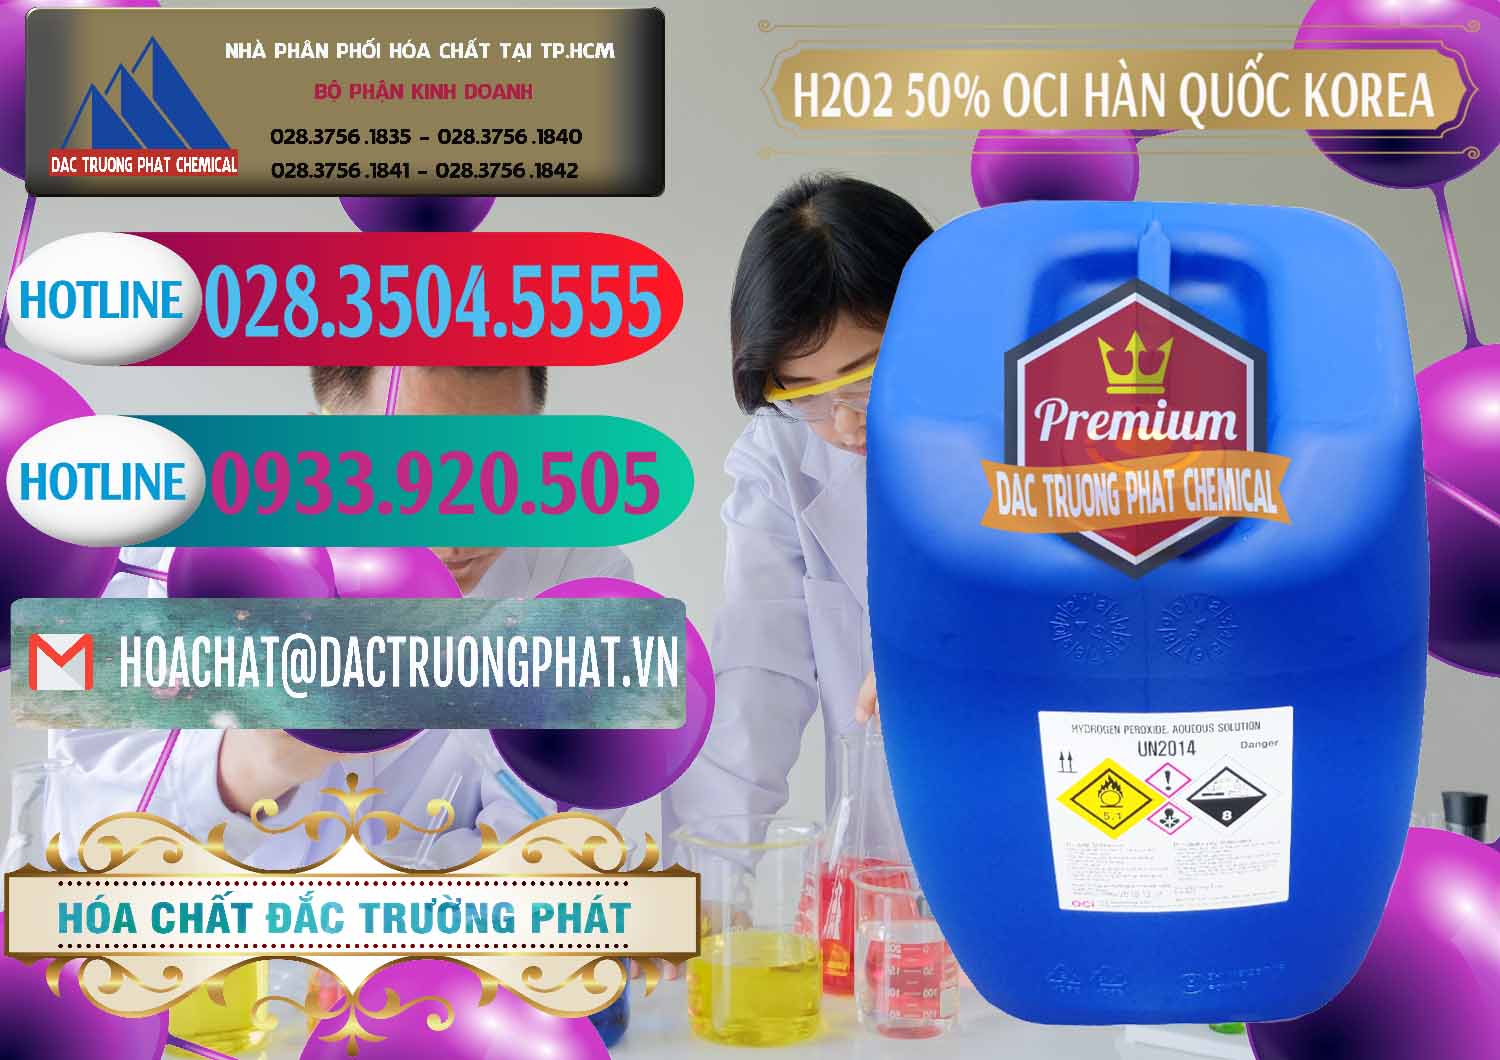 Nơi chuyên phân phối & bán H2O2 - Hydrogen Peroxide 50% OCI Hàn Quốc Korea - 0075 - Cung ứng và phân phối hóa chất tại TP.HCM - truongphat.vn